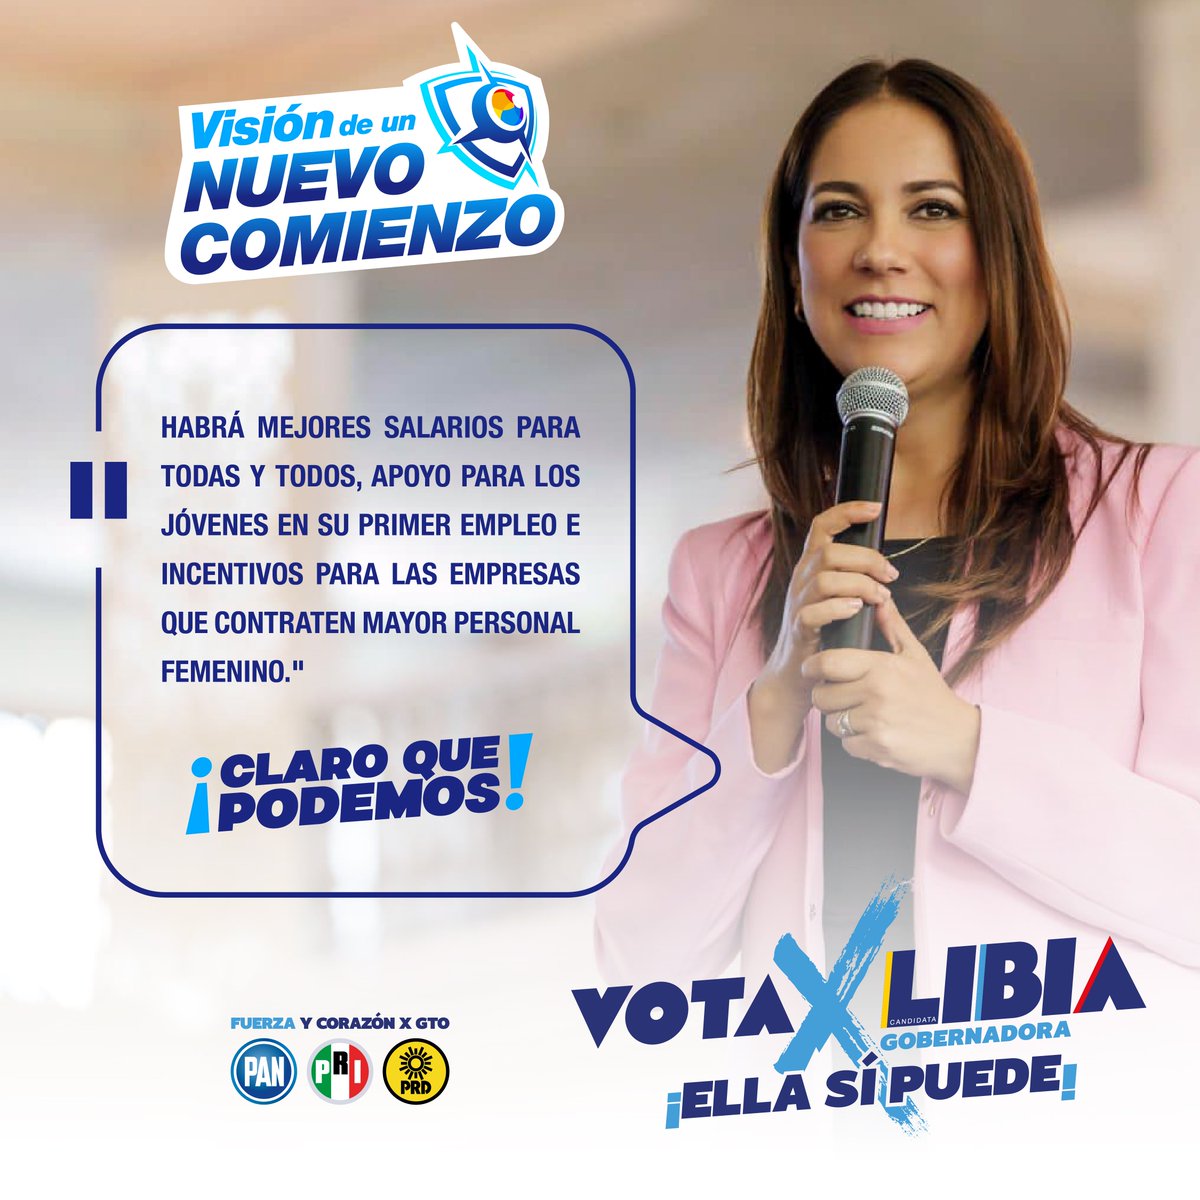 Hoy, en el  Día Internacional de las y los Trabajadores, reitero mi compromiso para que su trabajo sea mejor remunerado y reconozco a quienes le ponen todo el corazón a su chamba, ¡ustedes hacen latir la esperanza en #Guanajuato!👷‍♀️👷‍♂️
#ClaroQuePodemos
#LibiaGobernadora 
#VotaLibia